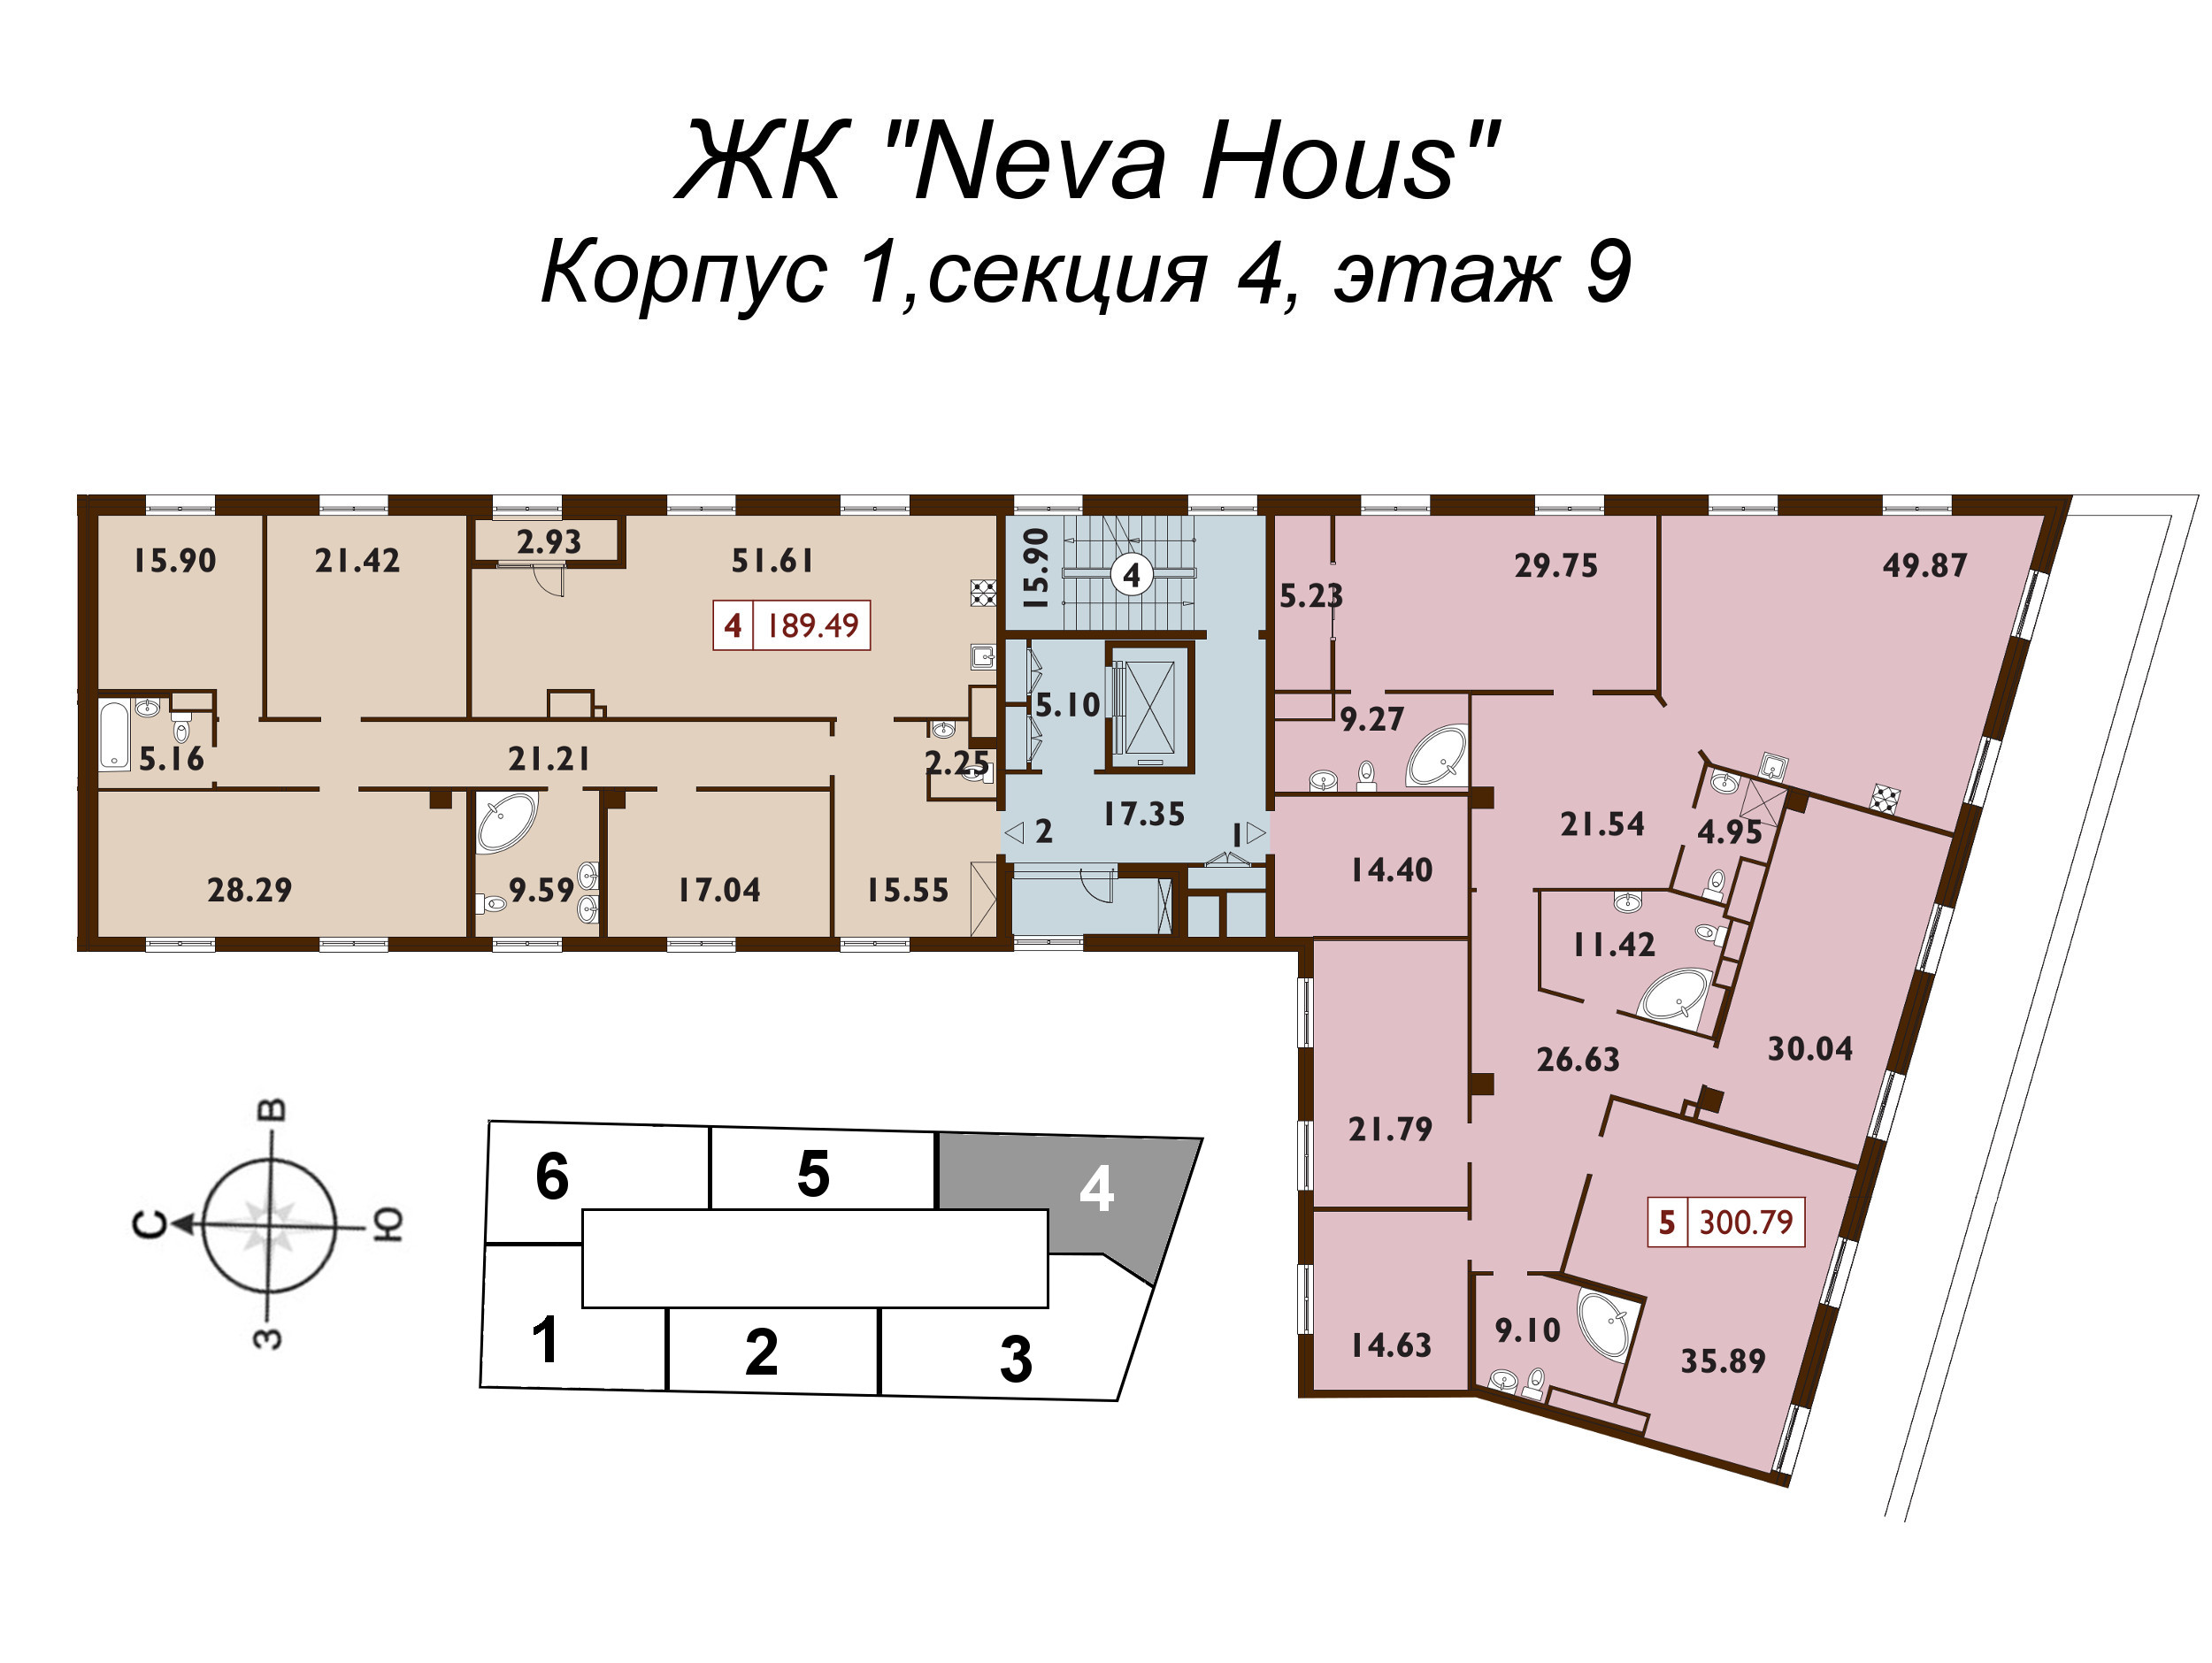 5-комнатная (Евро) квартира, 188.5 м² в ЖК "Neva Haus" - планировка этажа